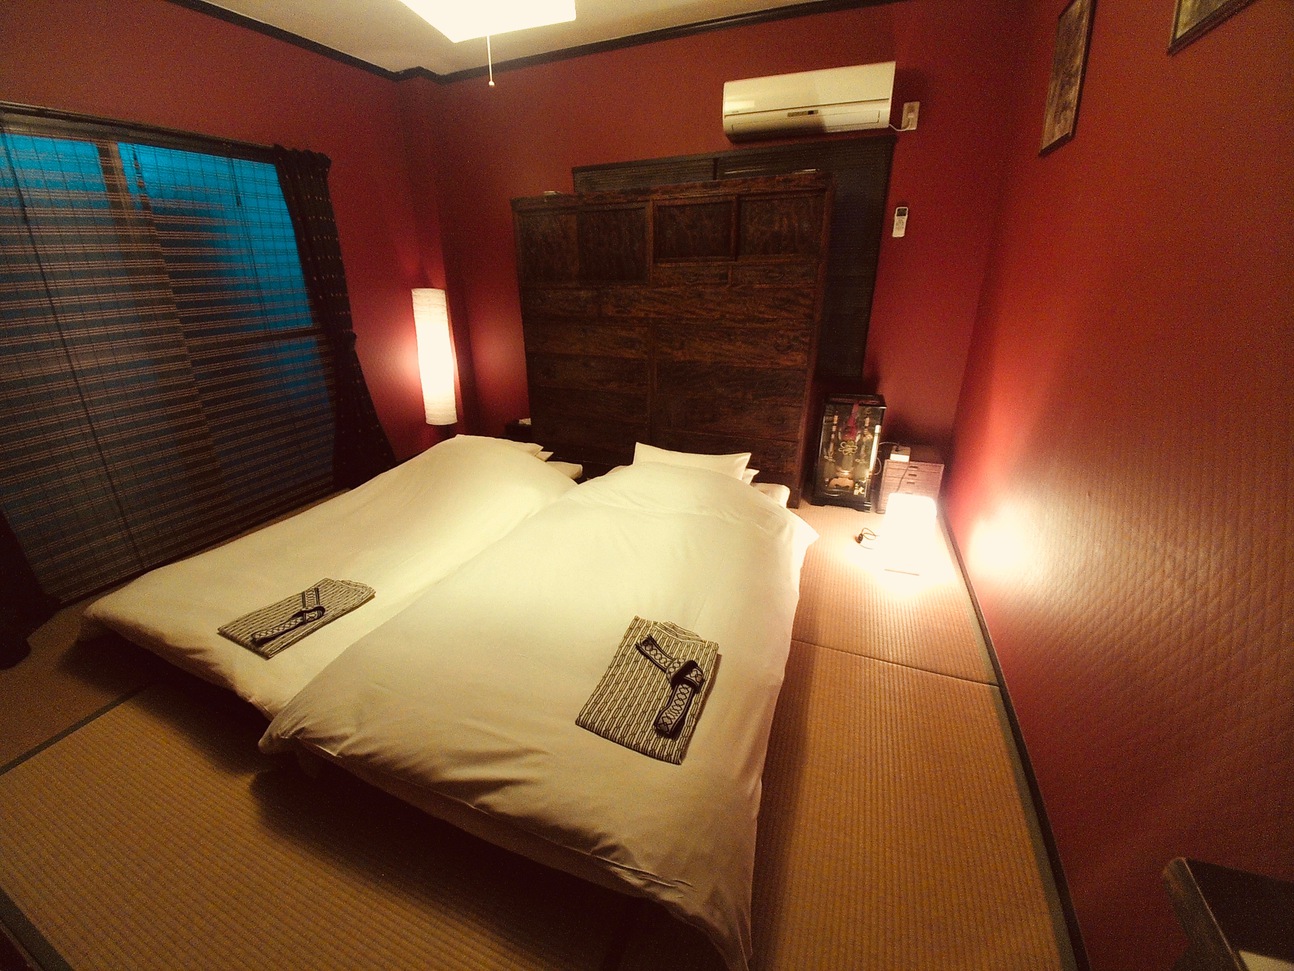 クロサワ部屋 Kurosawa room